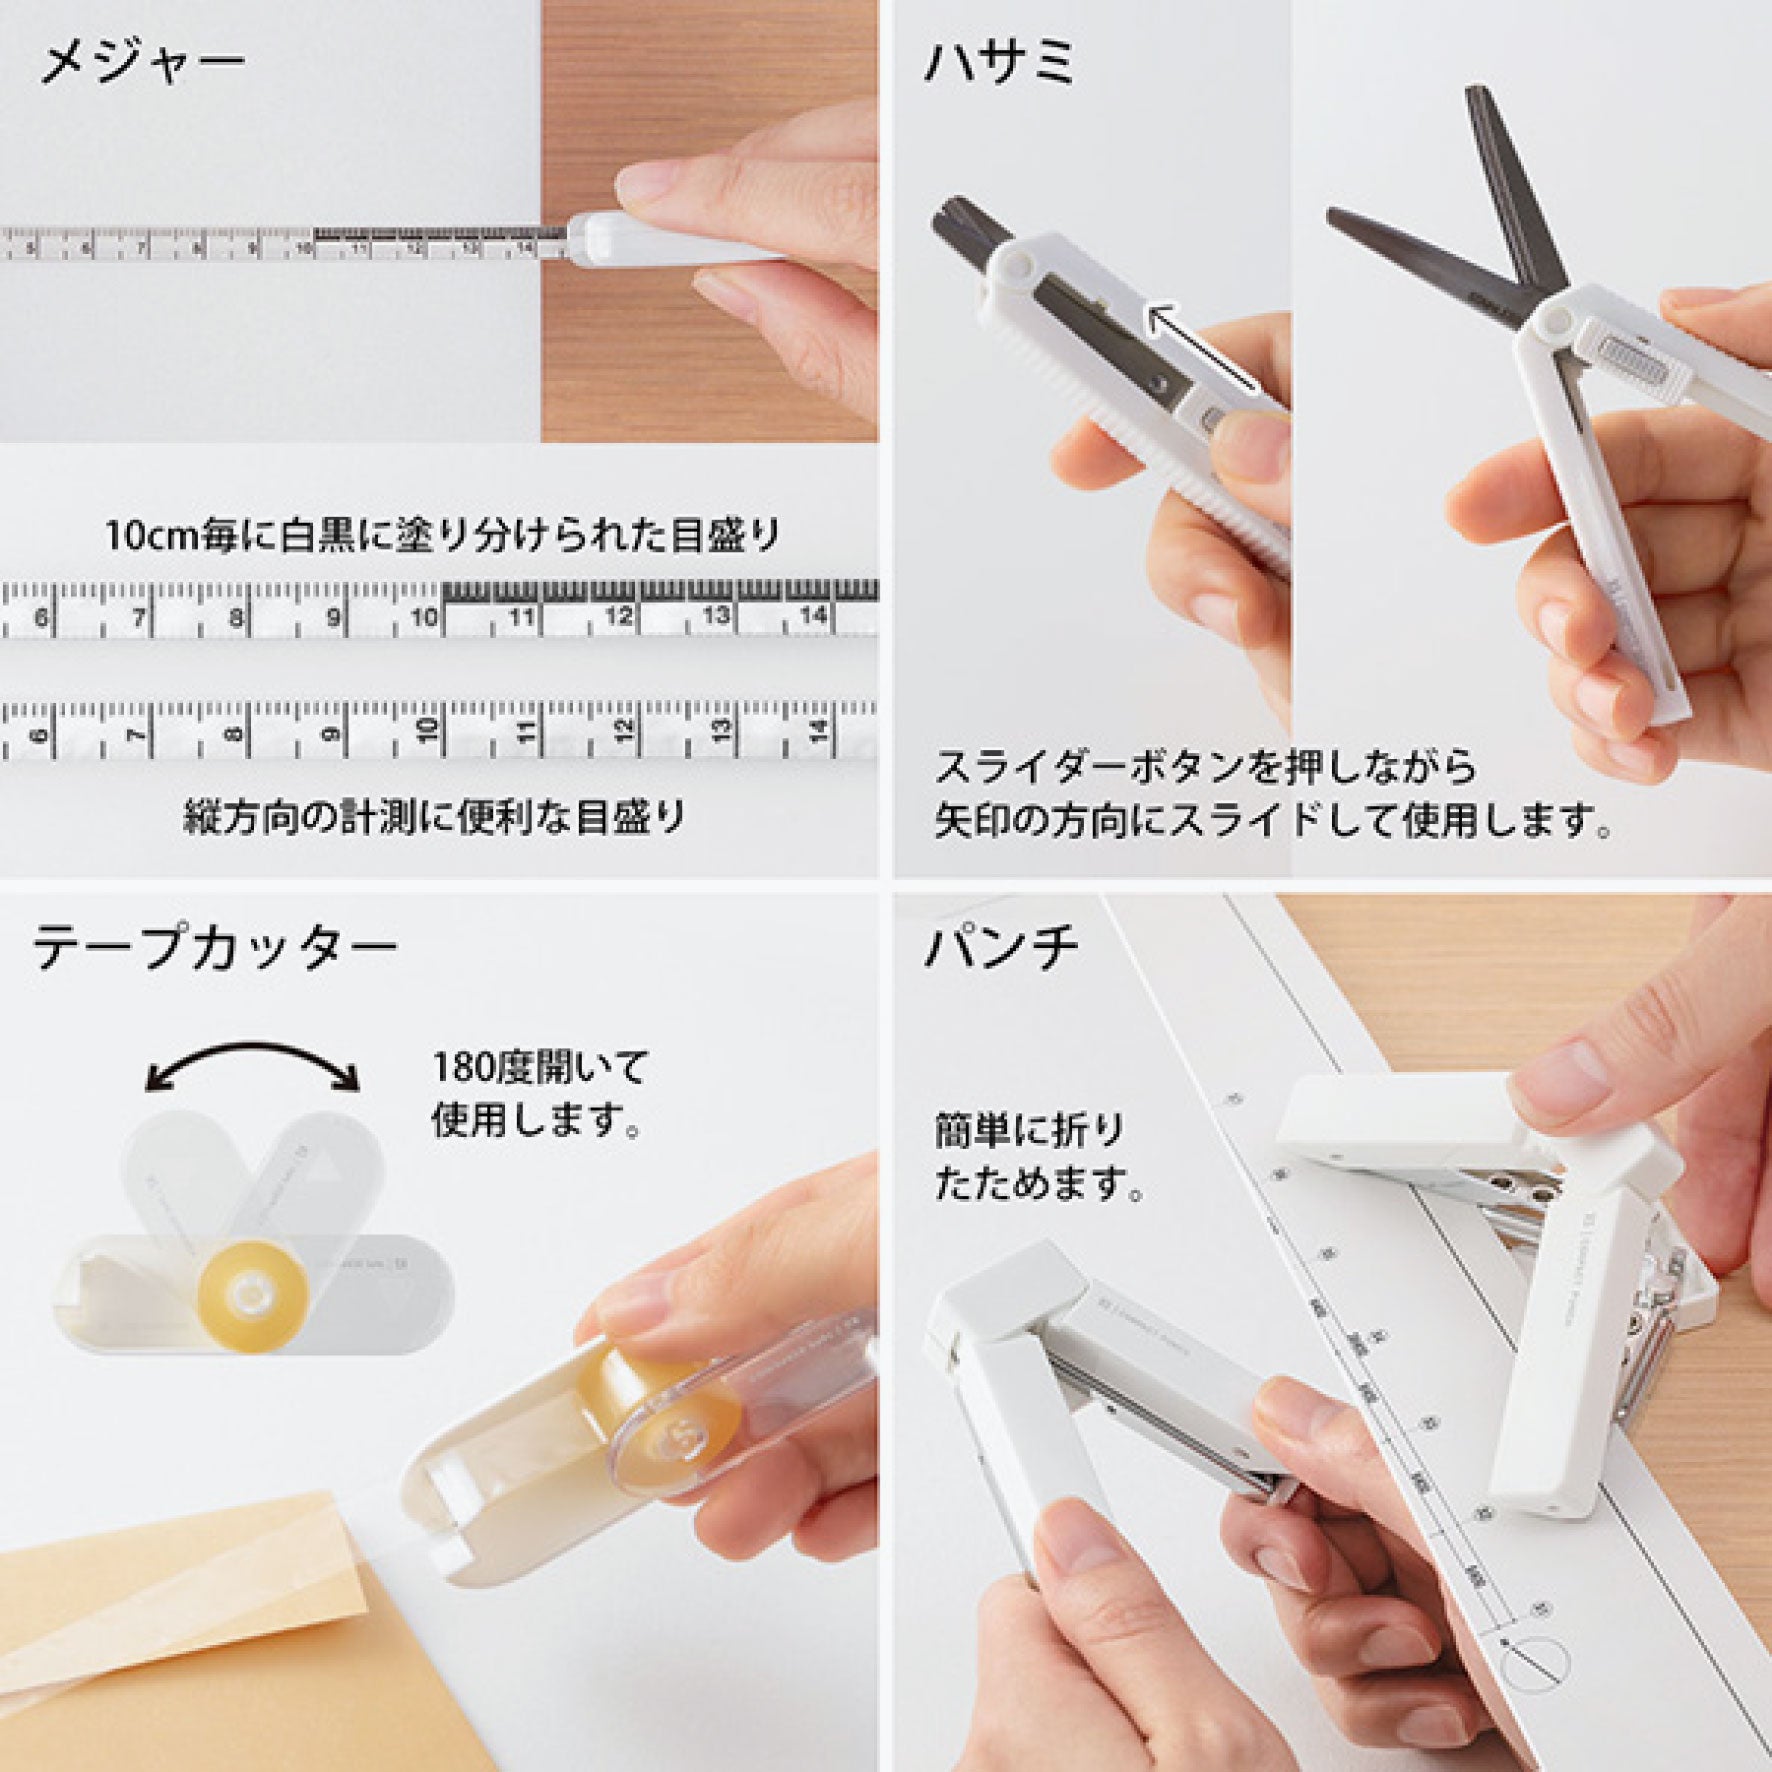 Midori - Stationery Kit - XS 8 Items (Limited Edition)